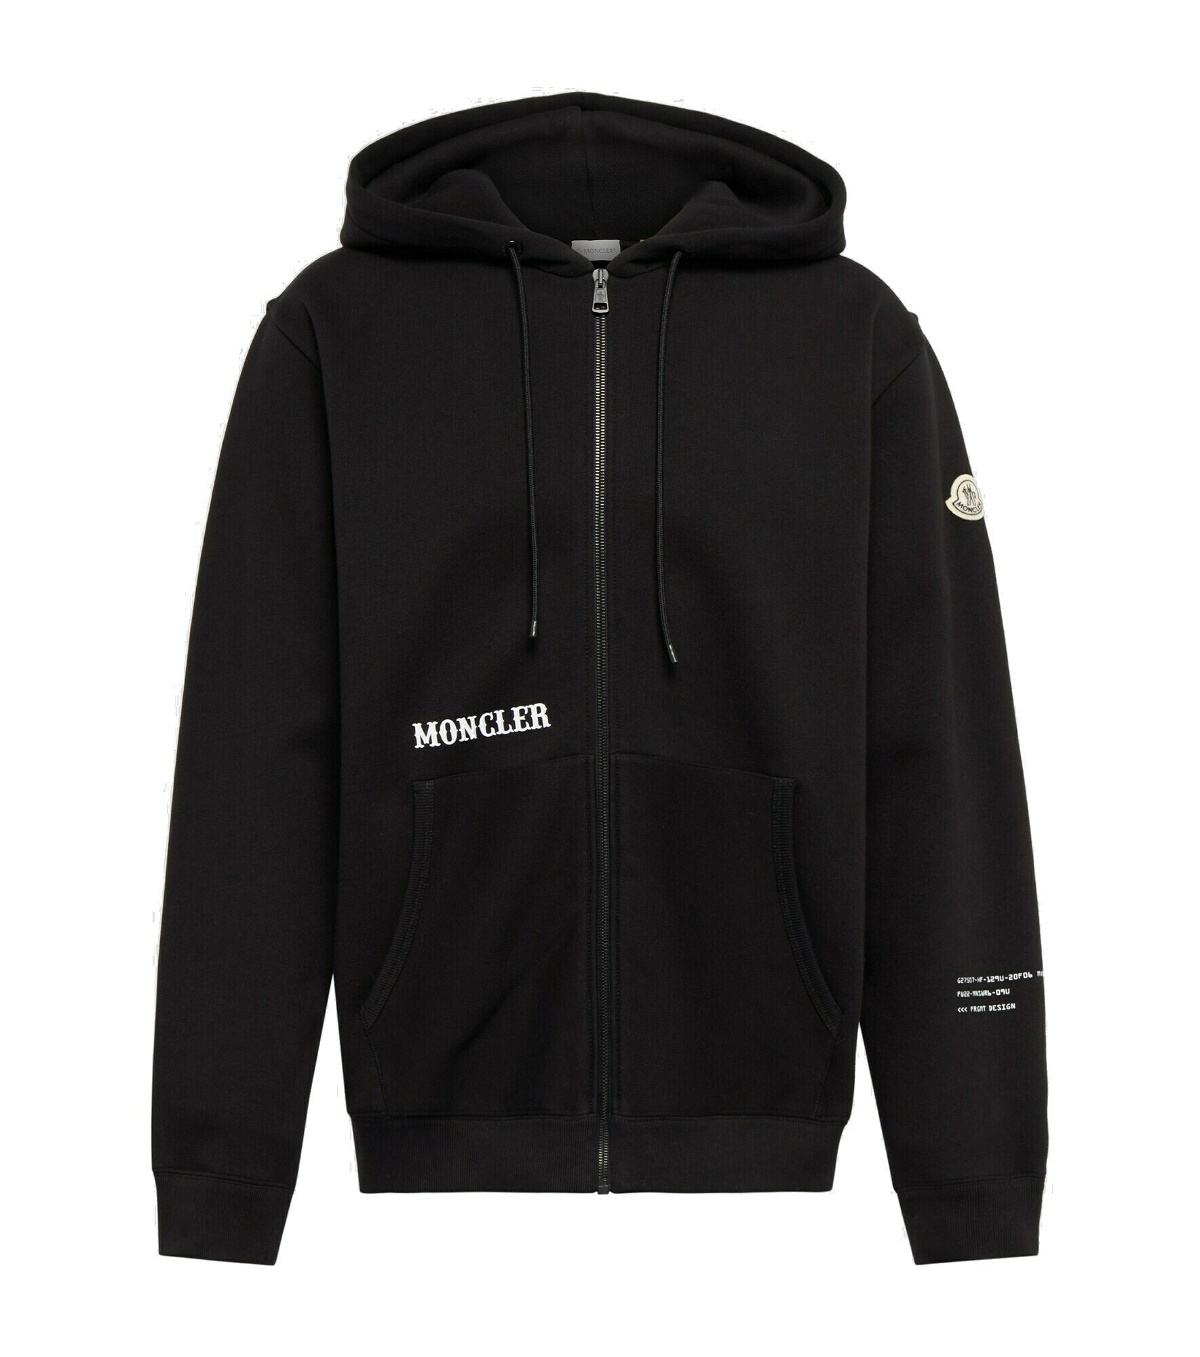 Moncler Genius - 7 Moncler FRGMT Hiroshi Fujiwara cotton hoodie Moncler ...